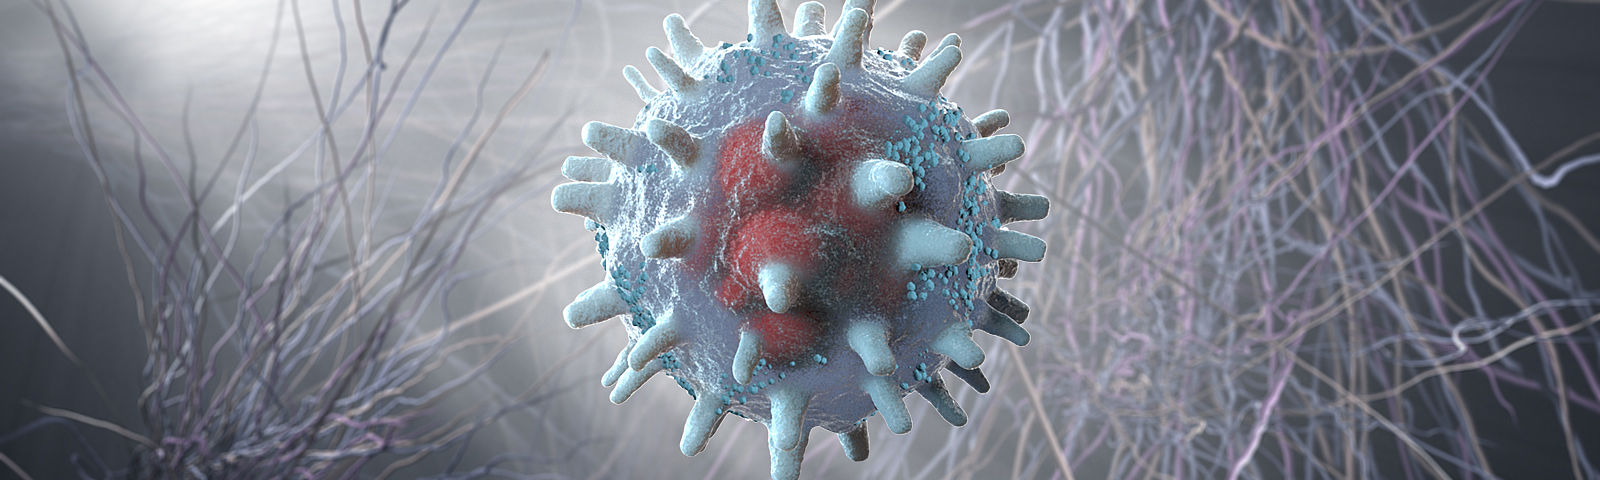 fancy arenavirus 3d scientific images